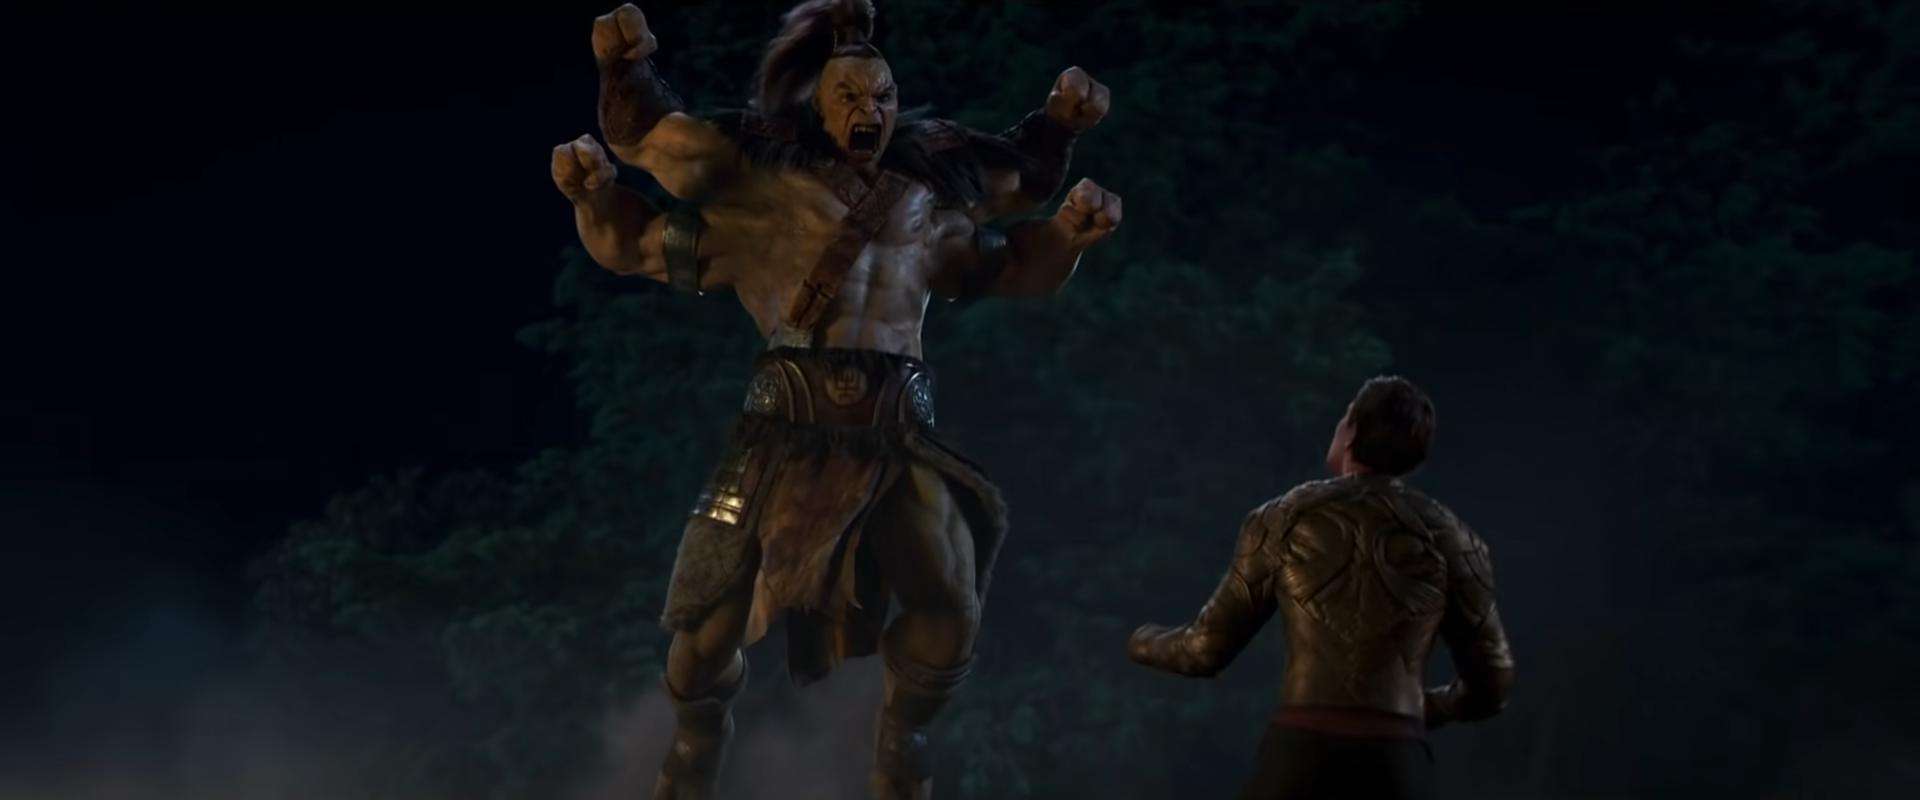 Filme de 'Mortal Kombat' ganha primeiro trailer com personagens